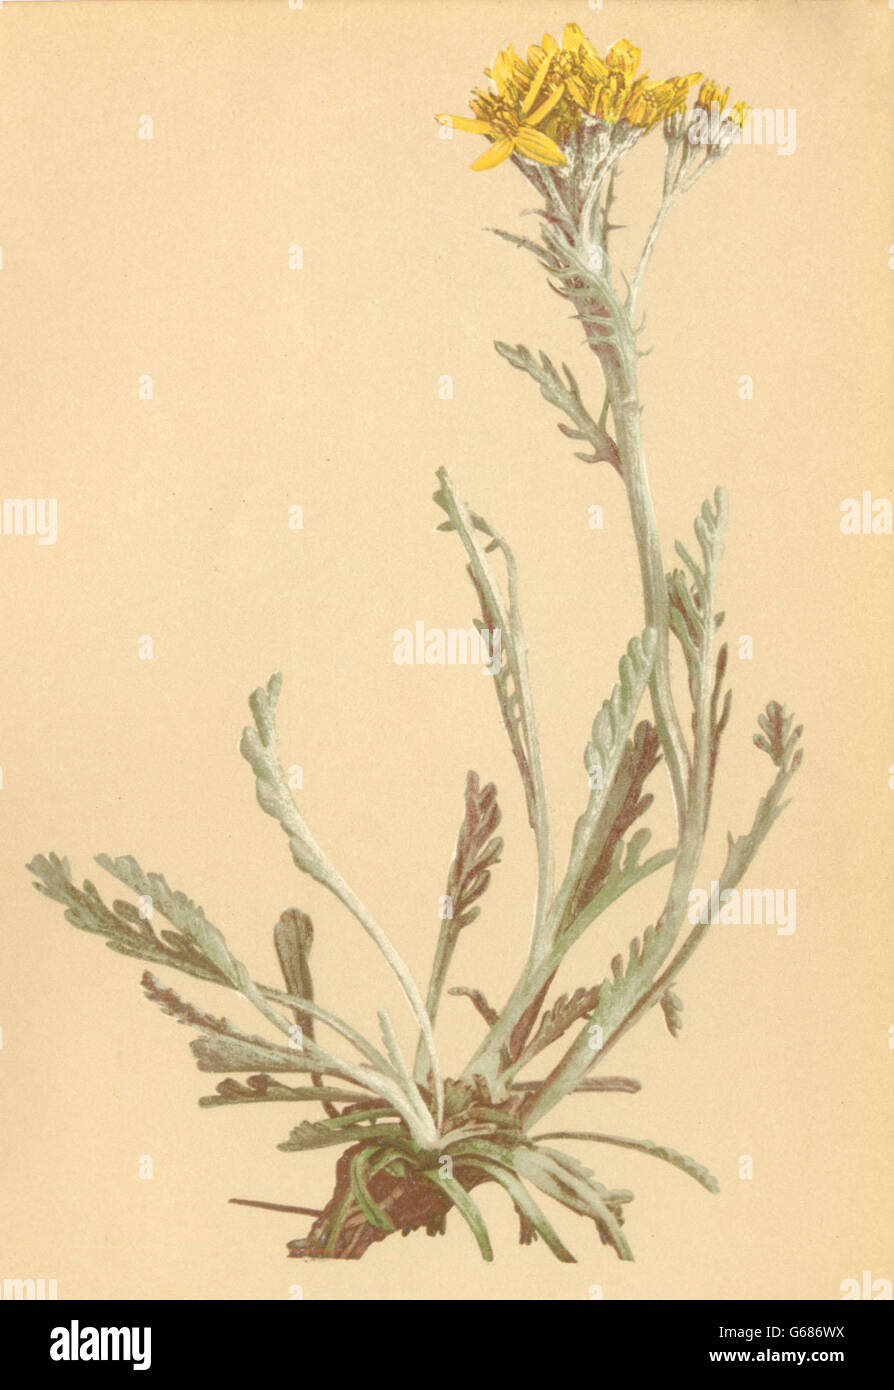 ALPENFLORA fiori alpini: Senecio carniolicus W-Krainisches Kreuzkraut, 1897 Foto Stock